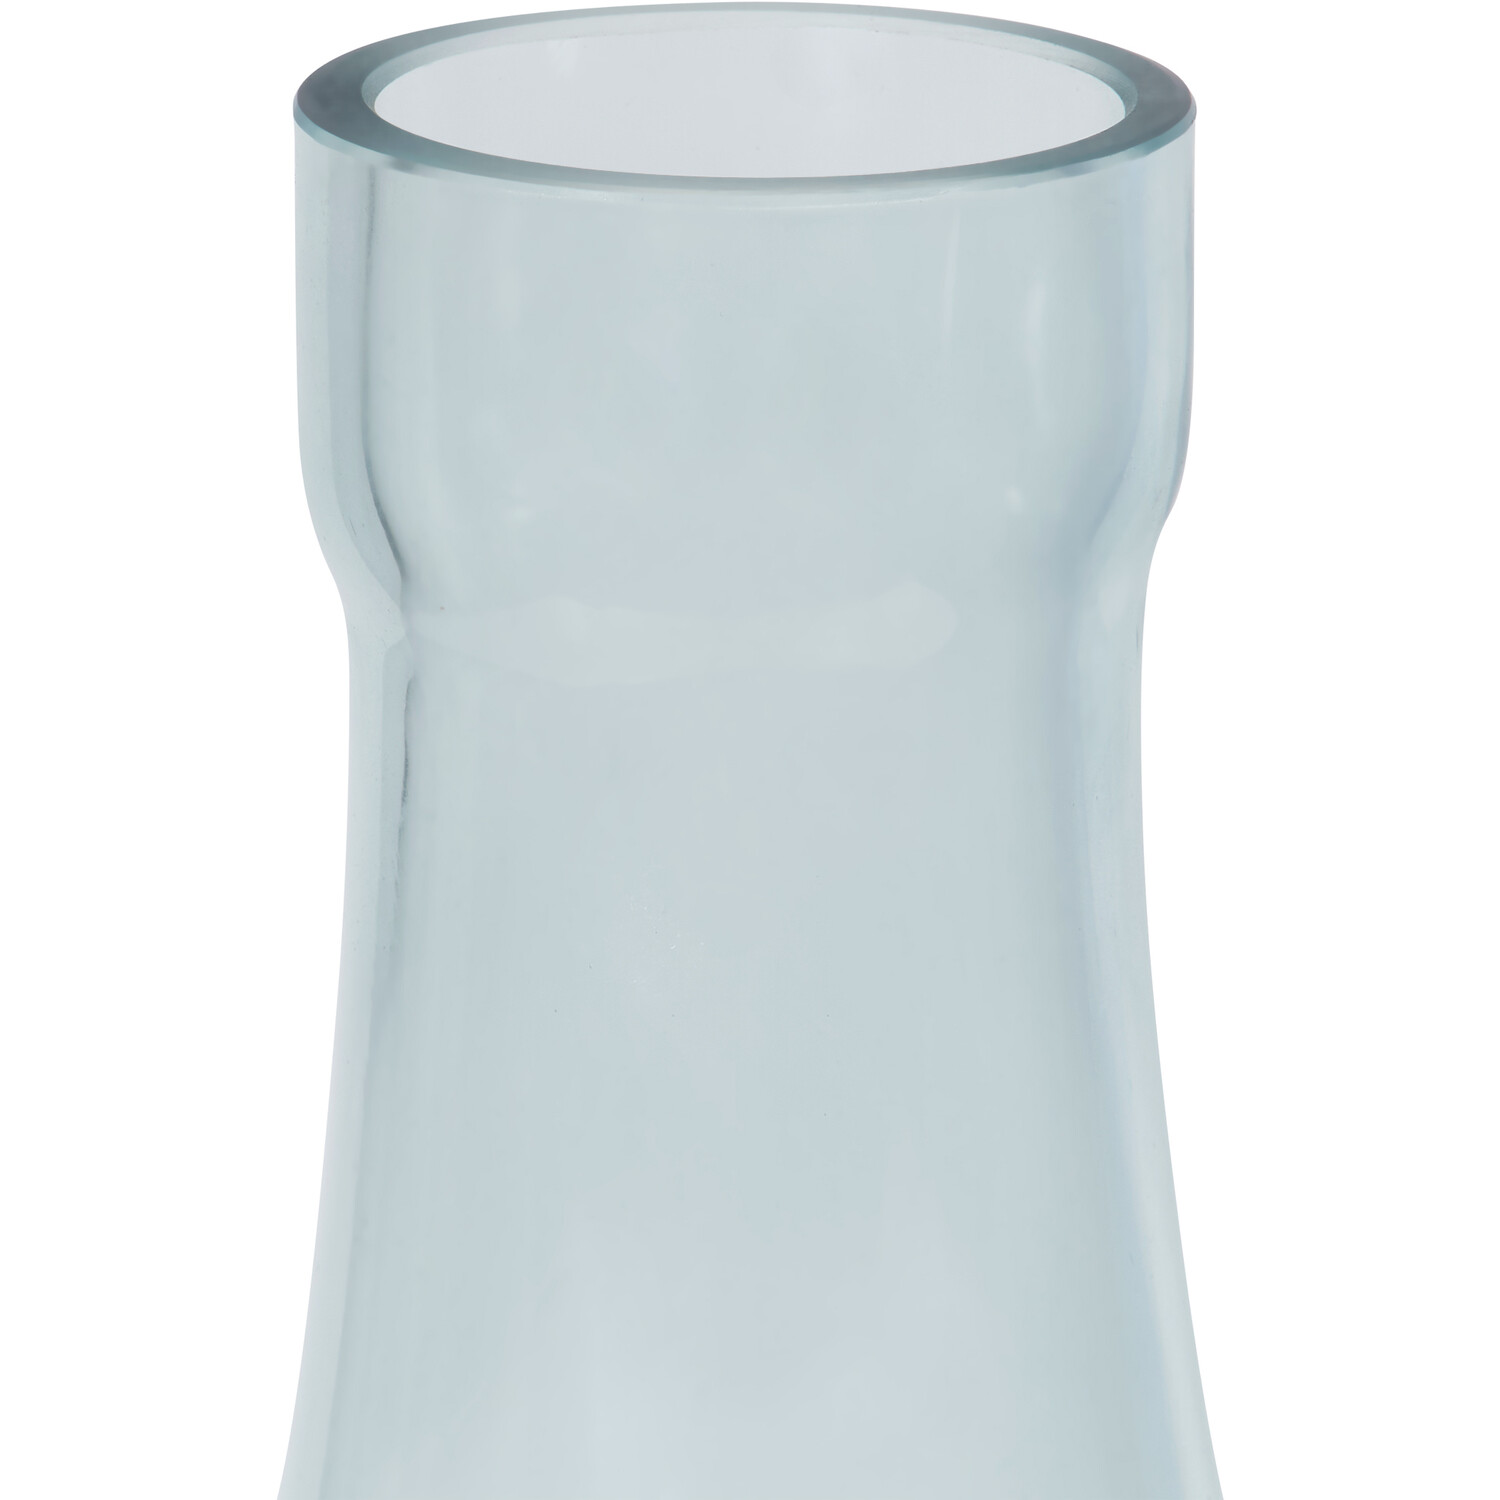 Bottle Neck Vase - Blue Image 3